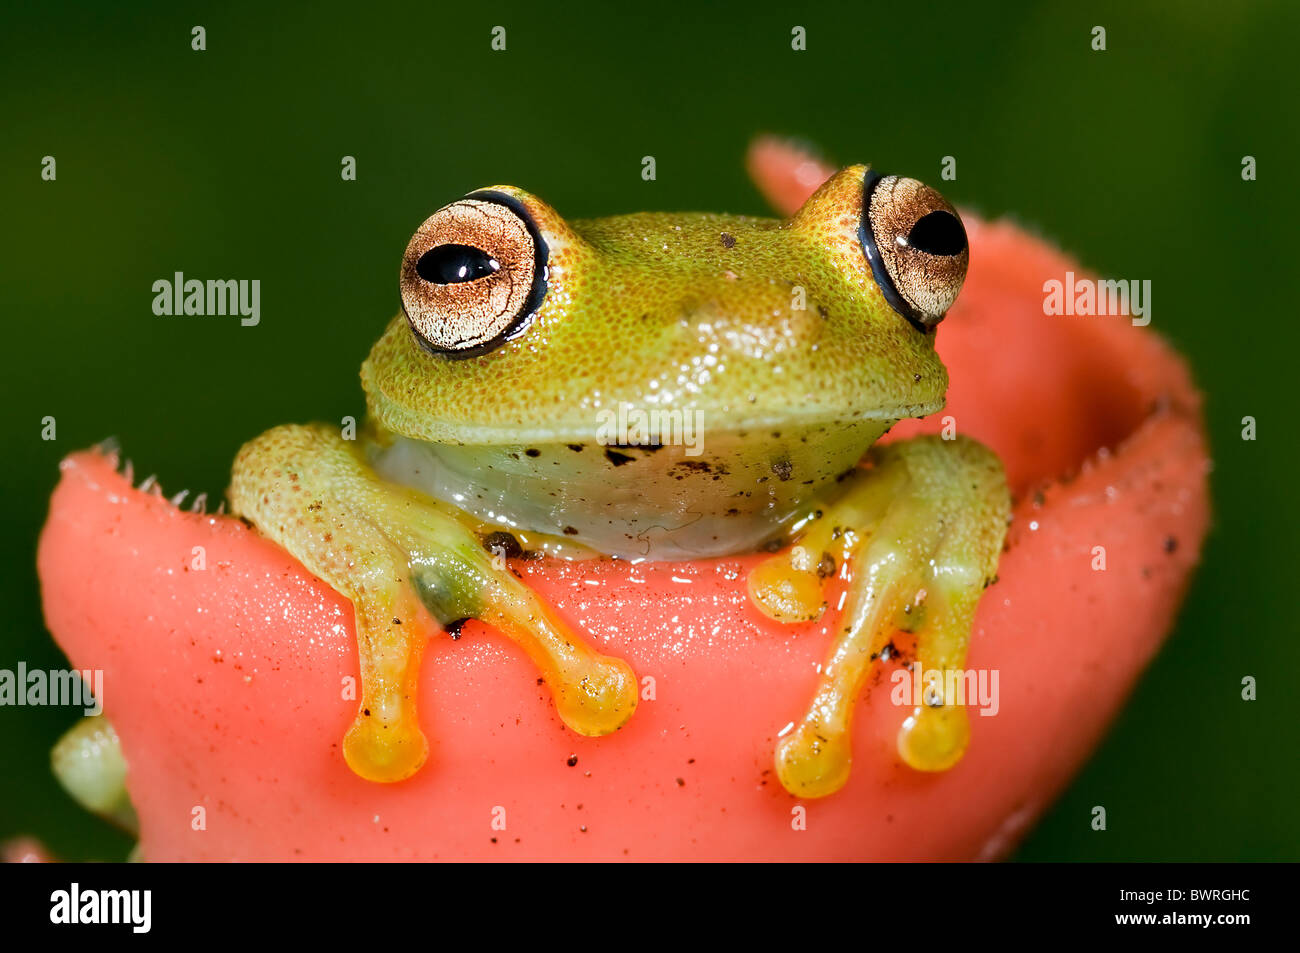 Hyla granosa tree frog from Ecuador Stock Photo